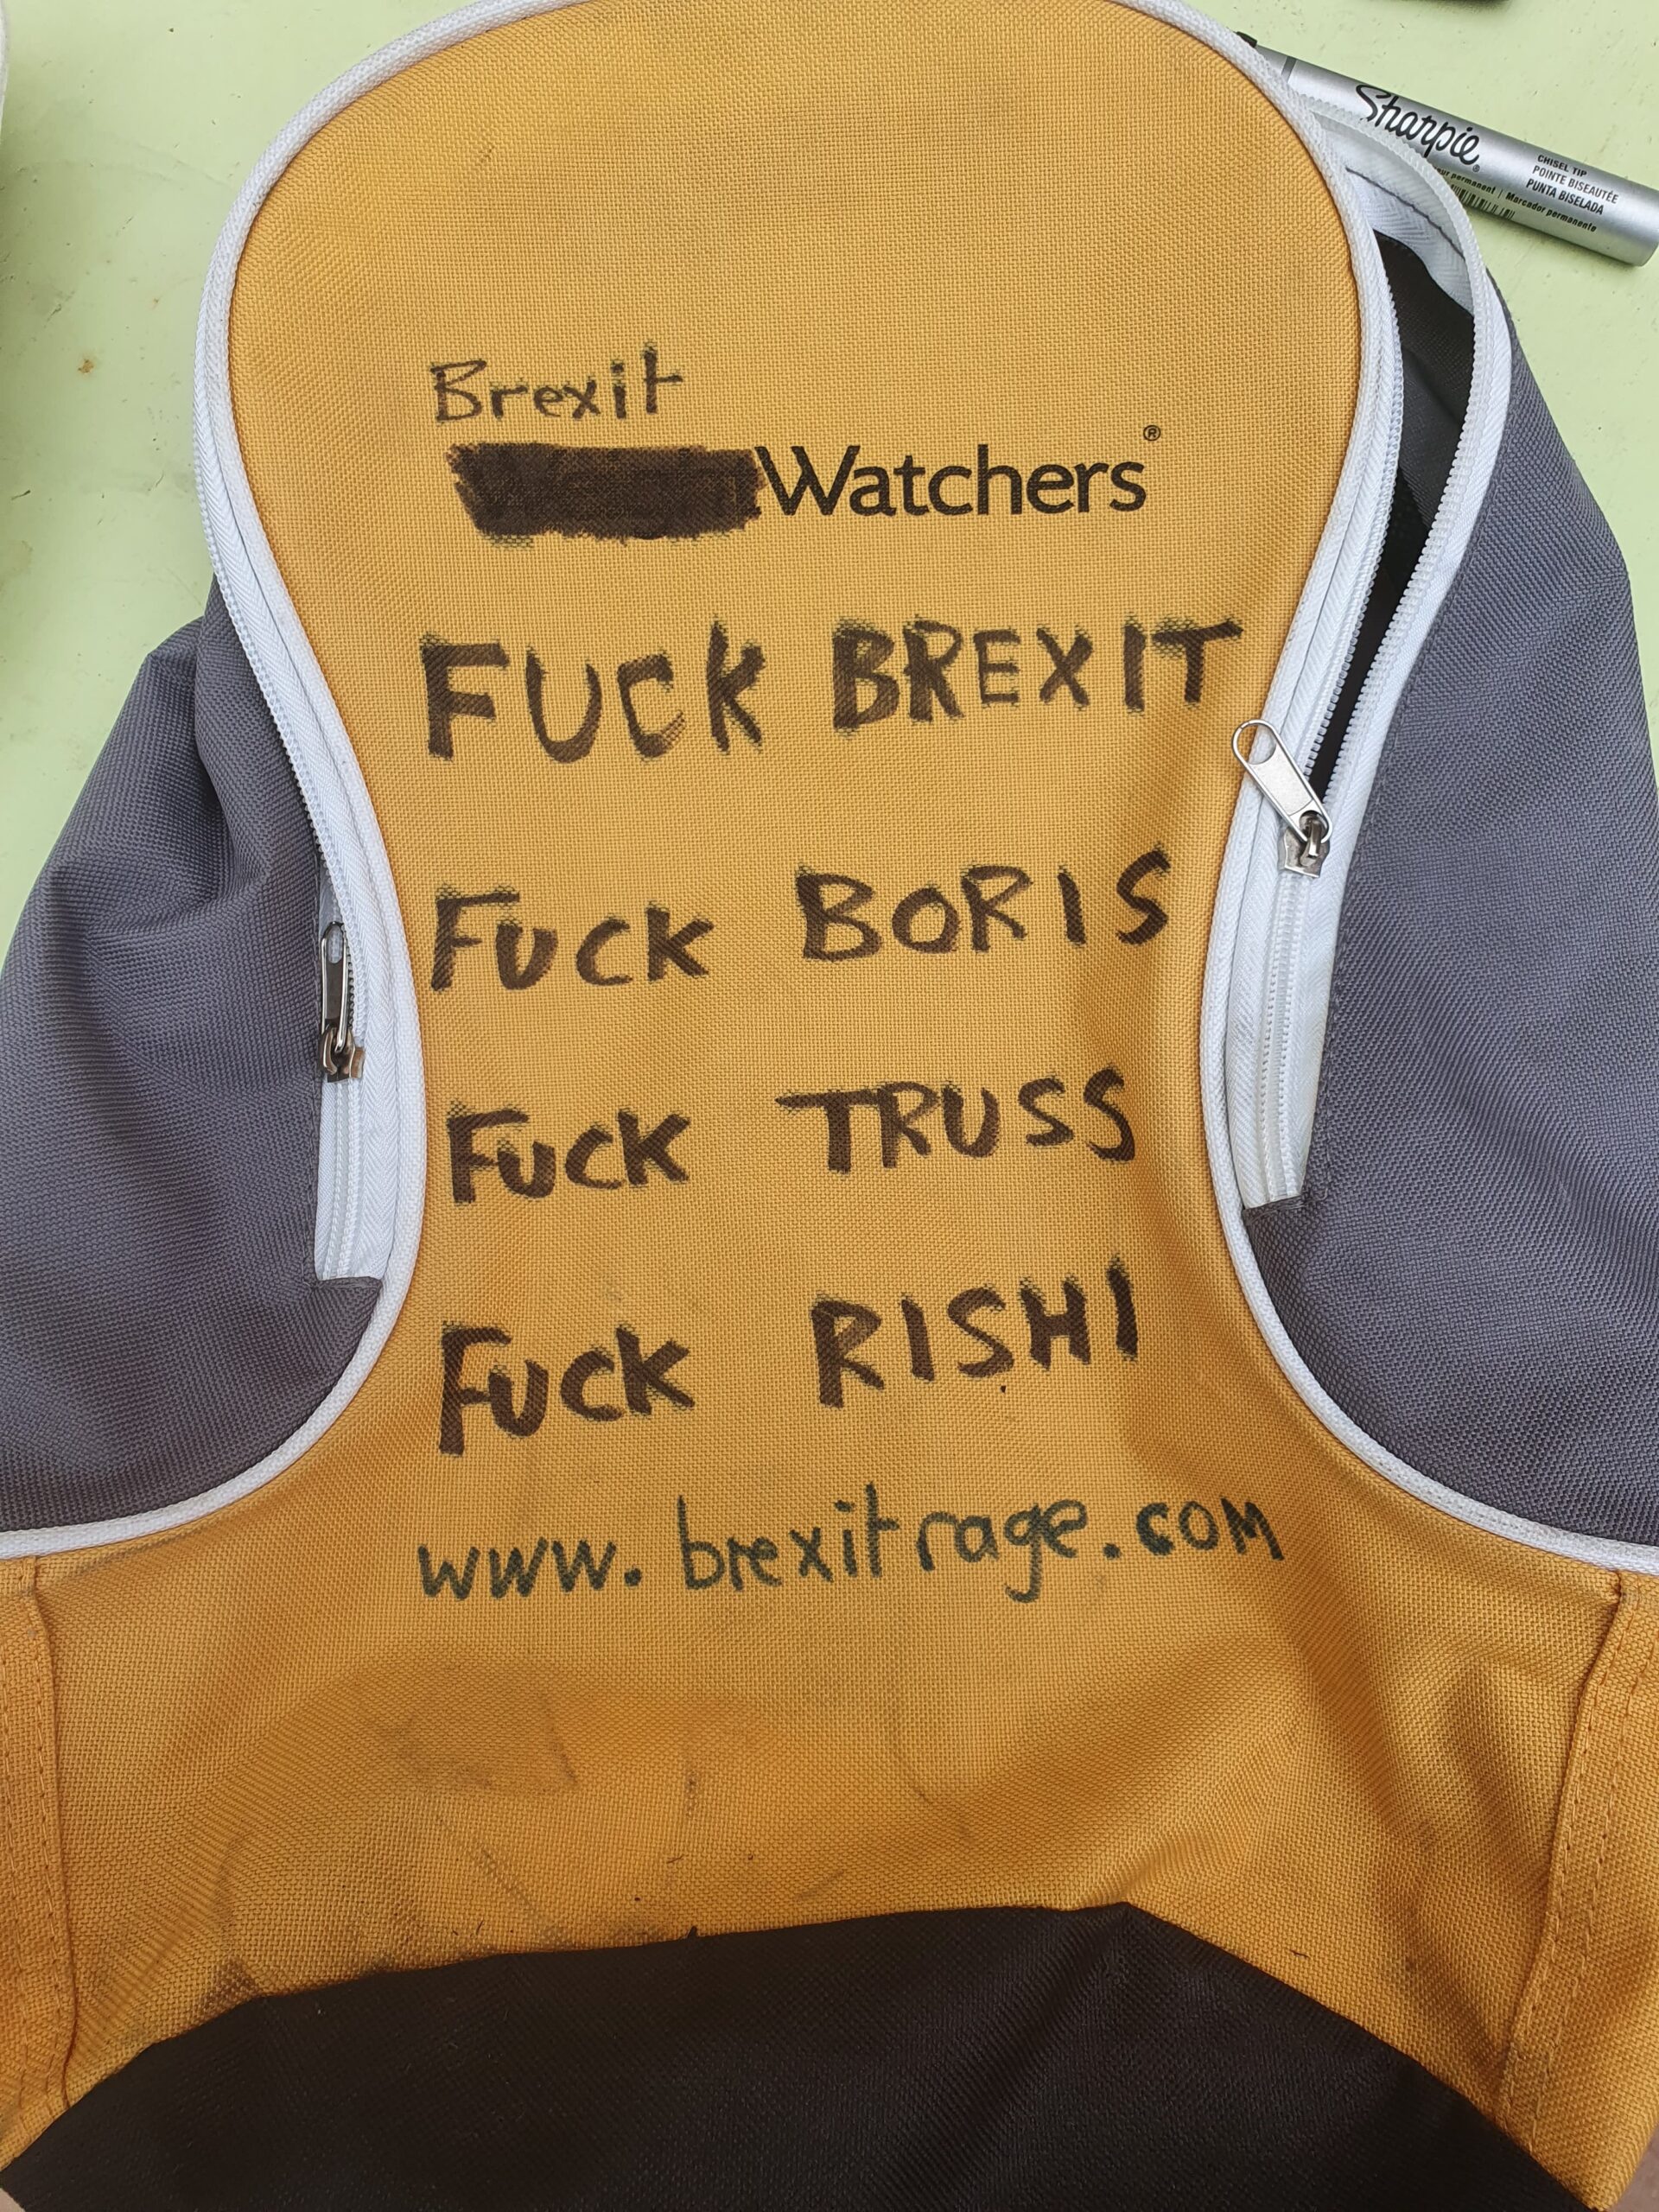 Brexit-Watchers